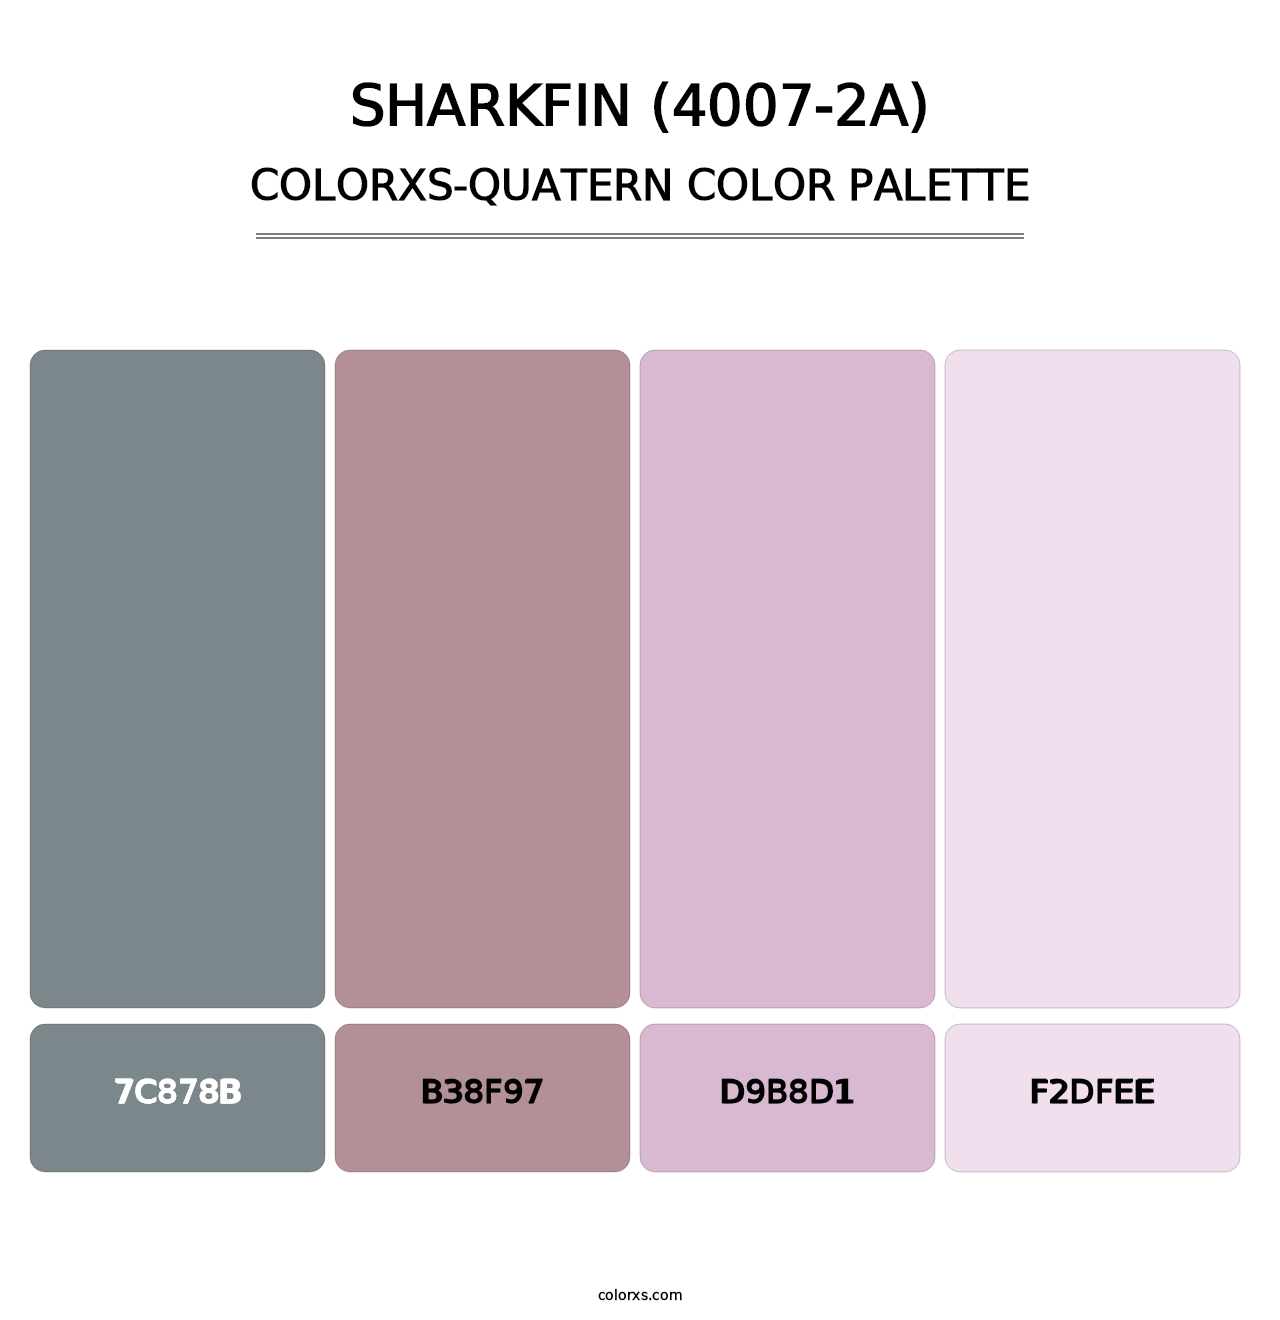 Sharkfin (4007-2A) - Colorxs Quatern Palette